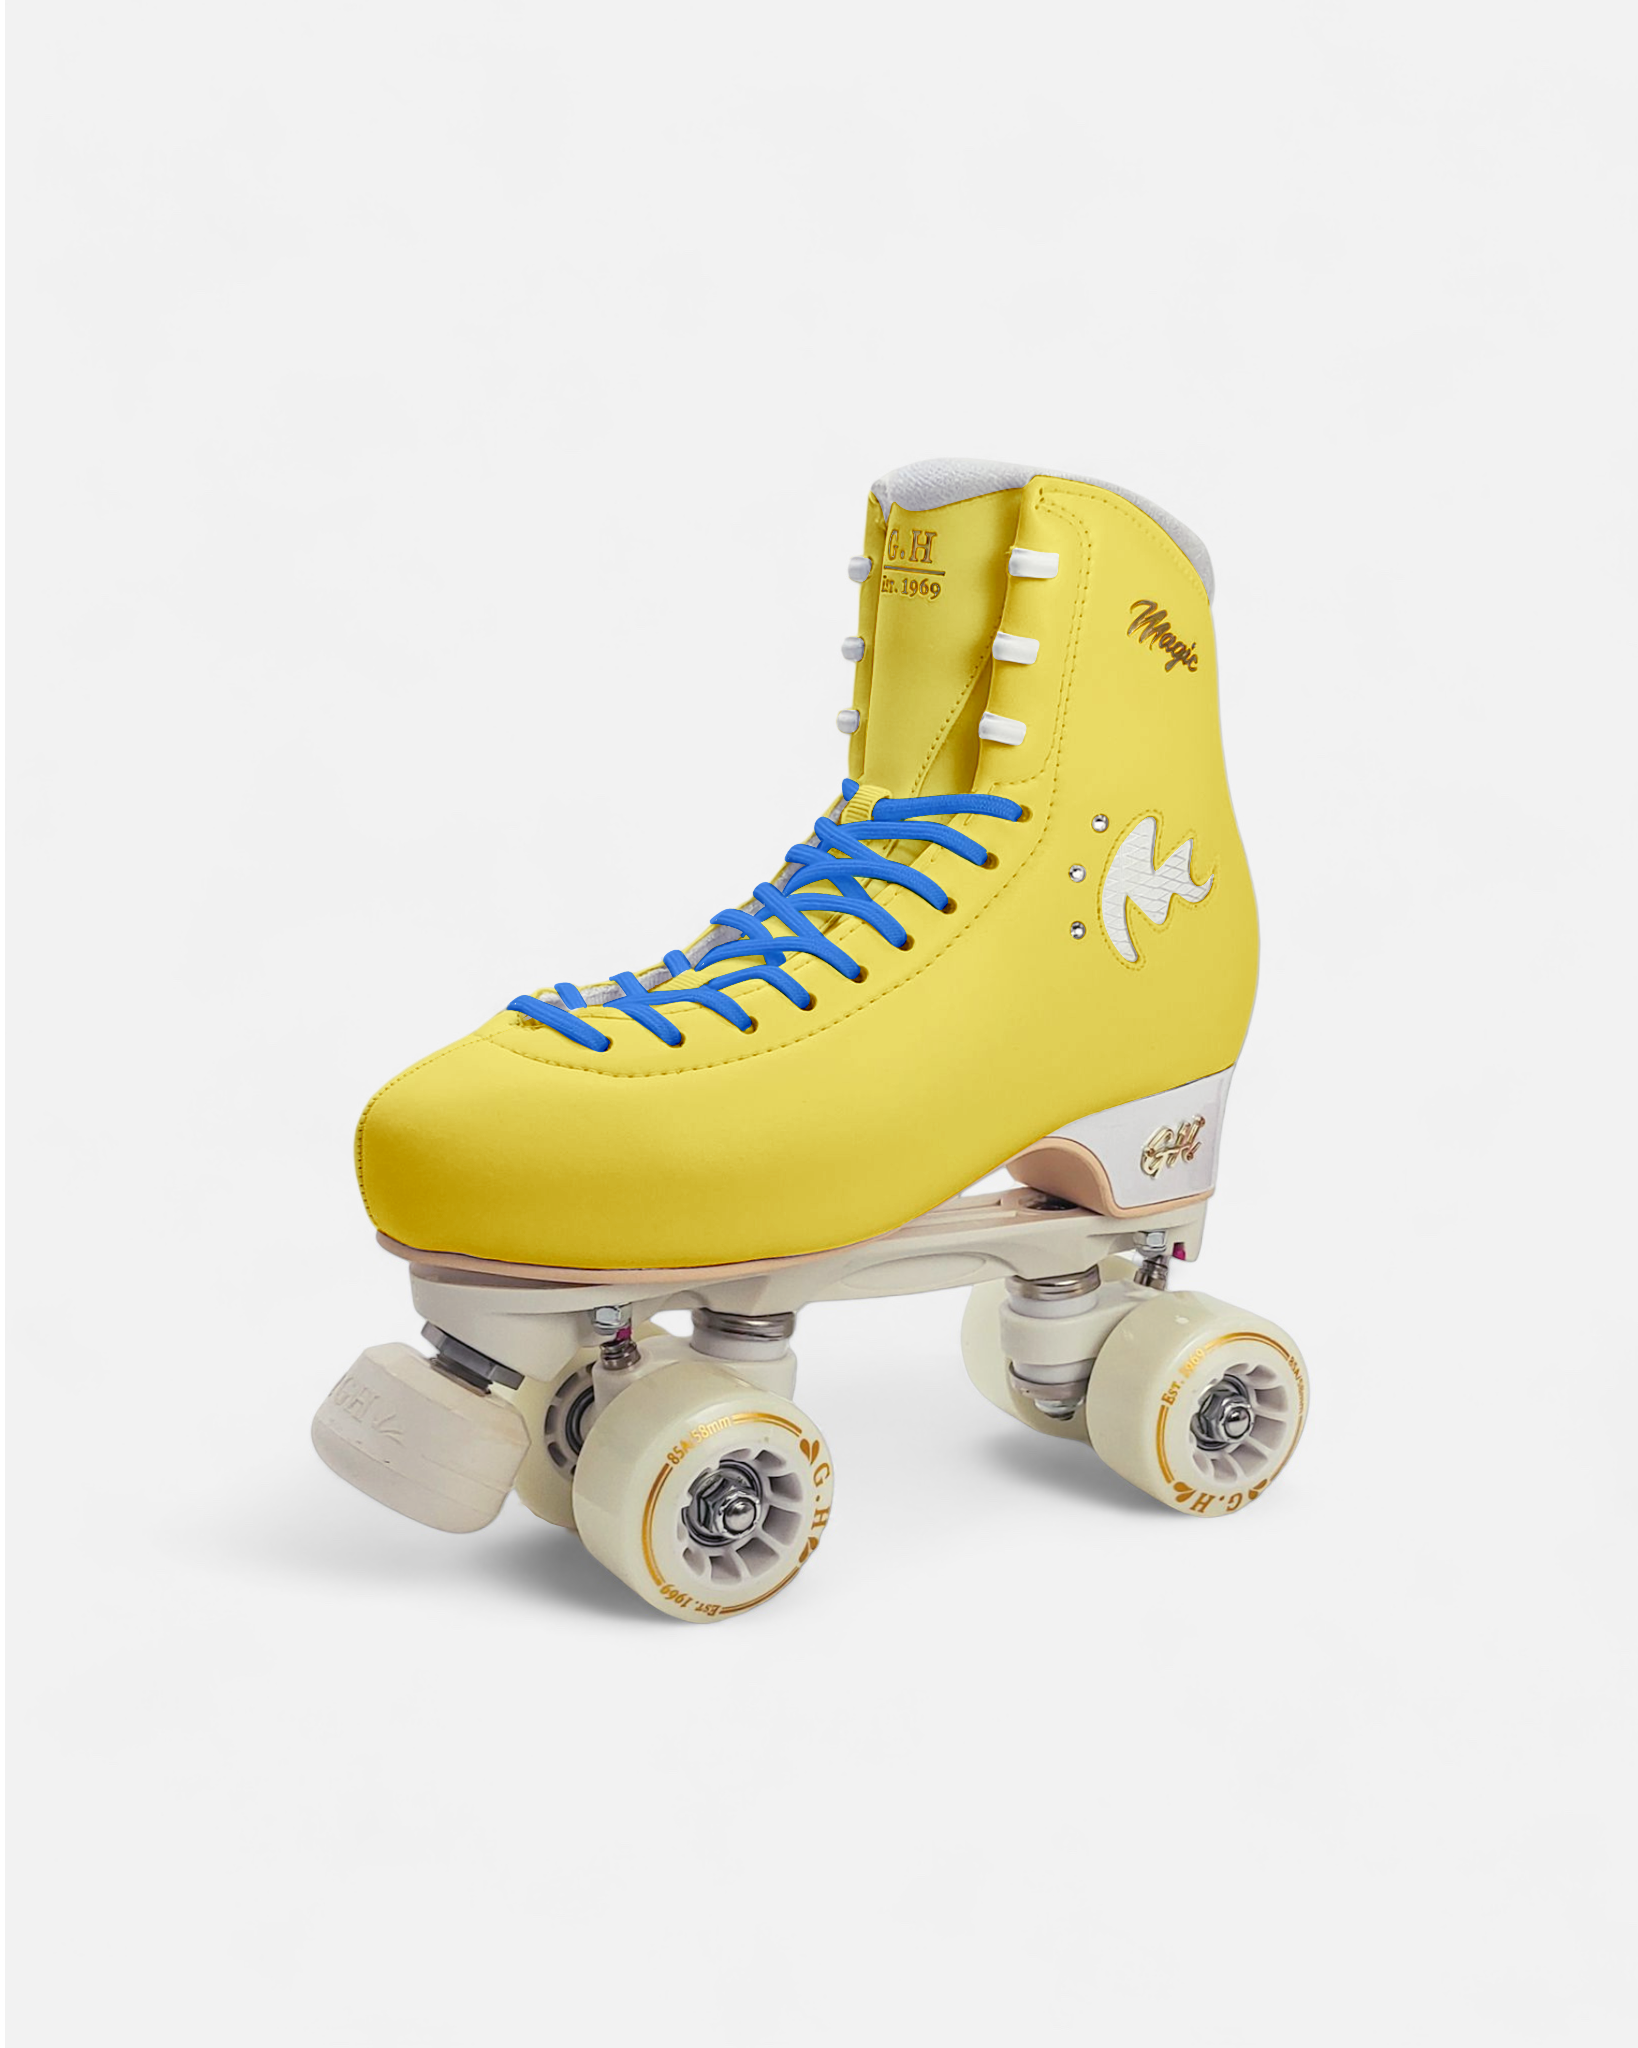 Magic Quad Roller Skates (vegan leather）